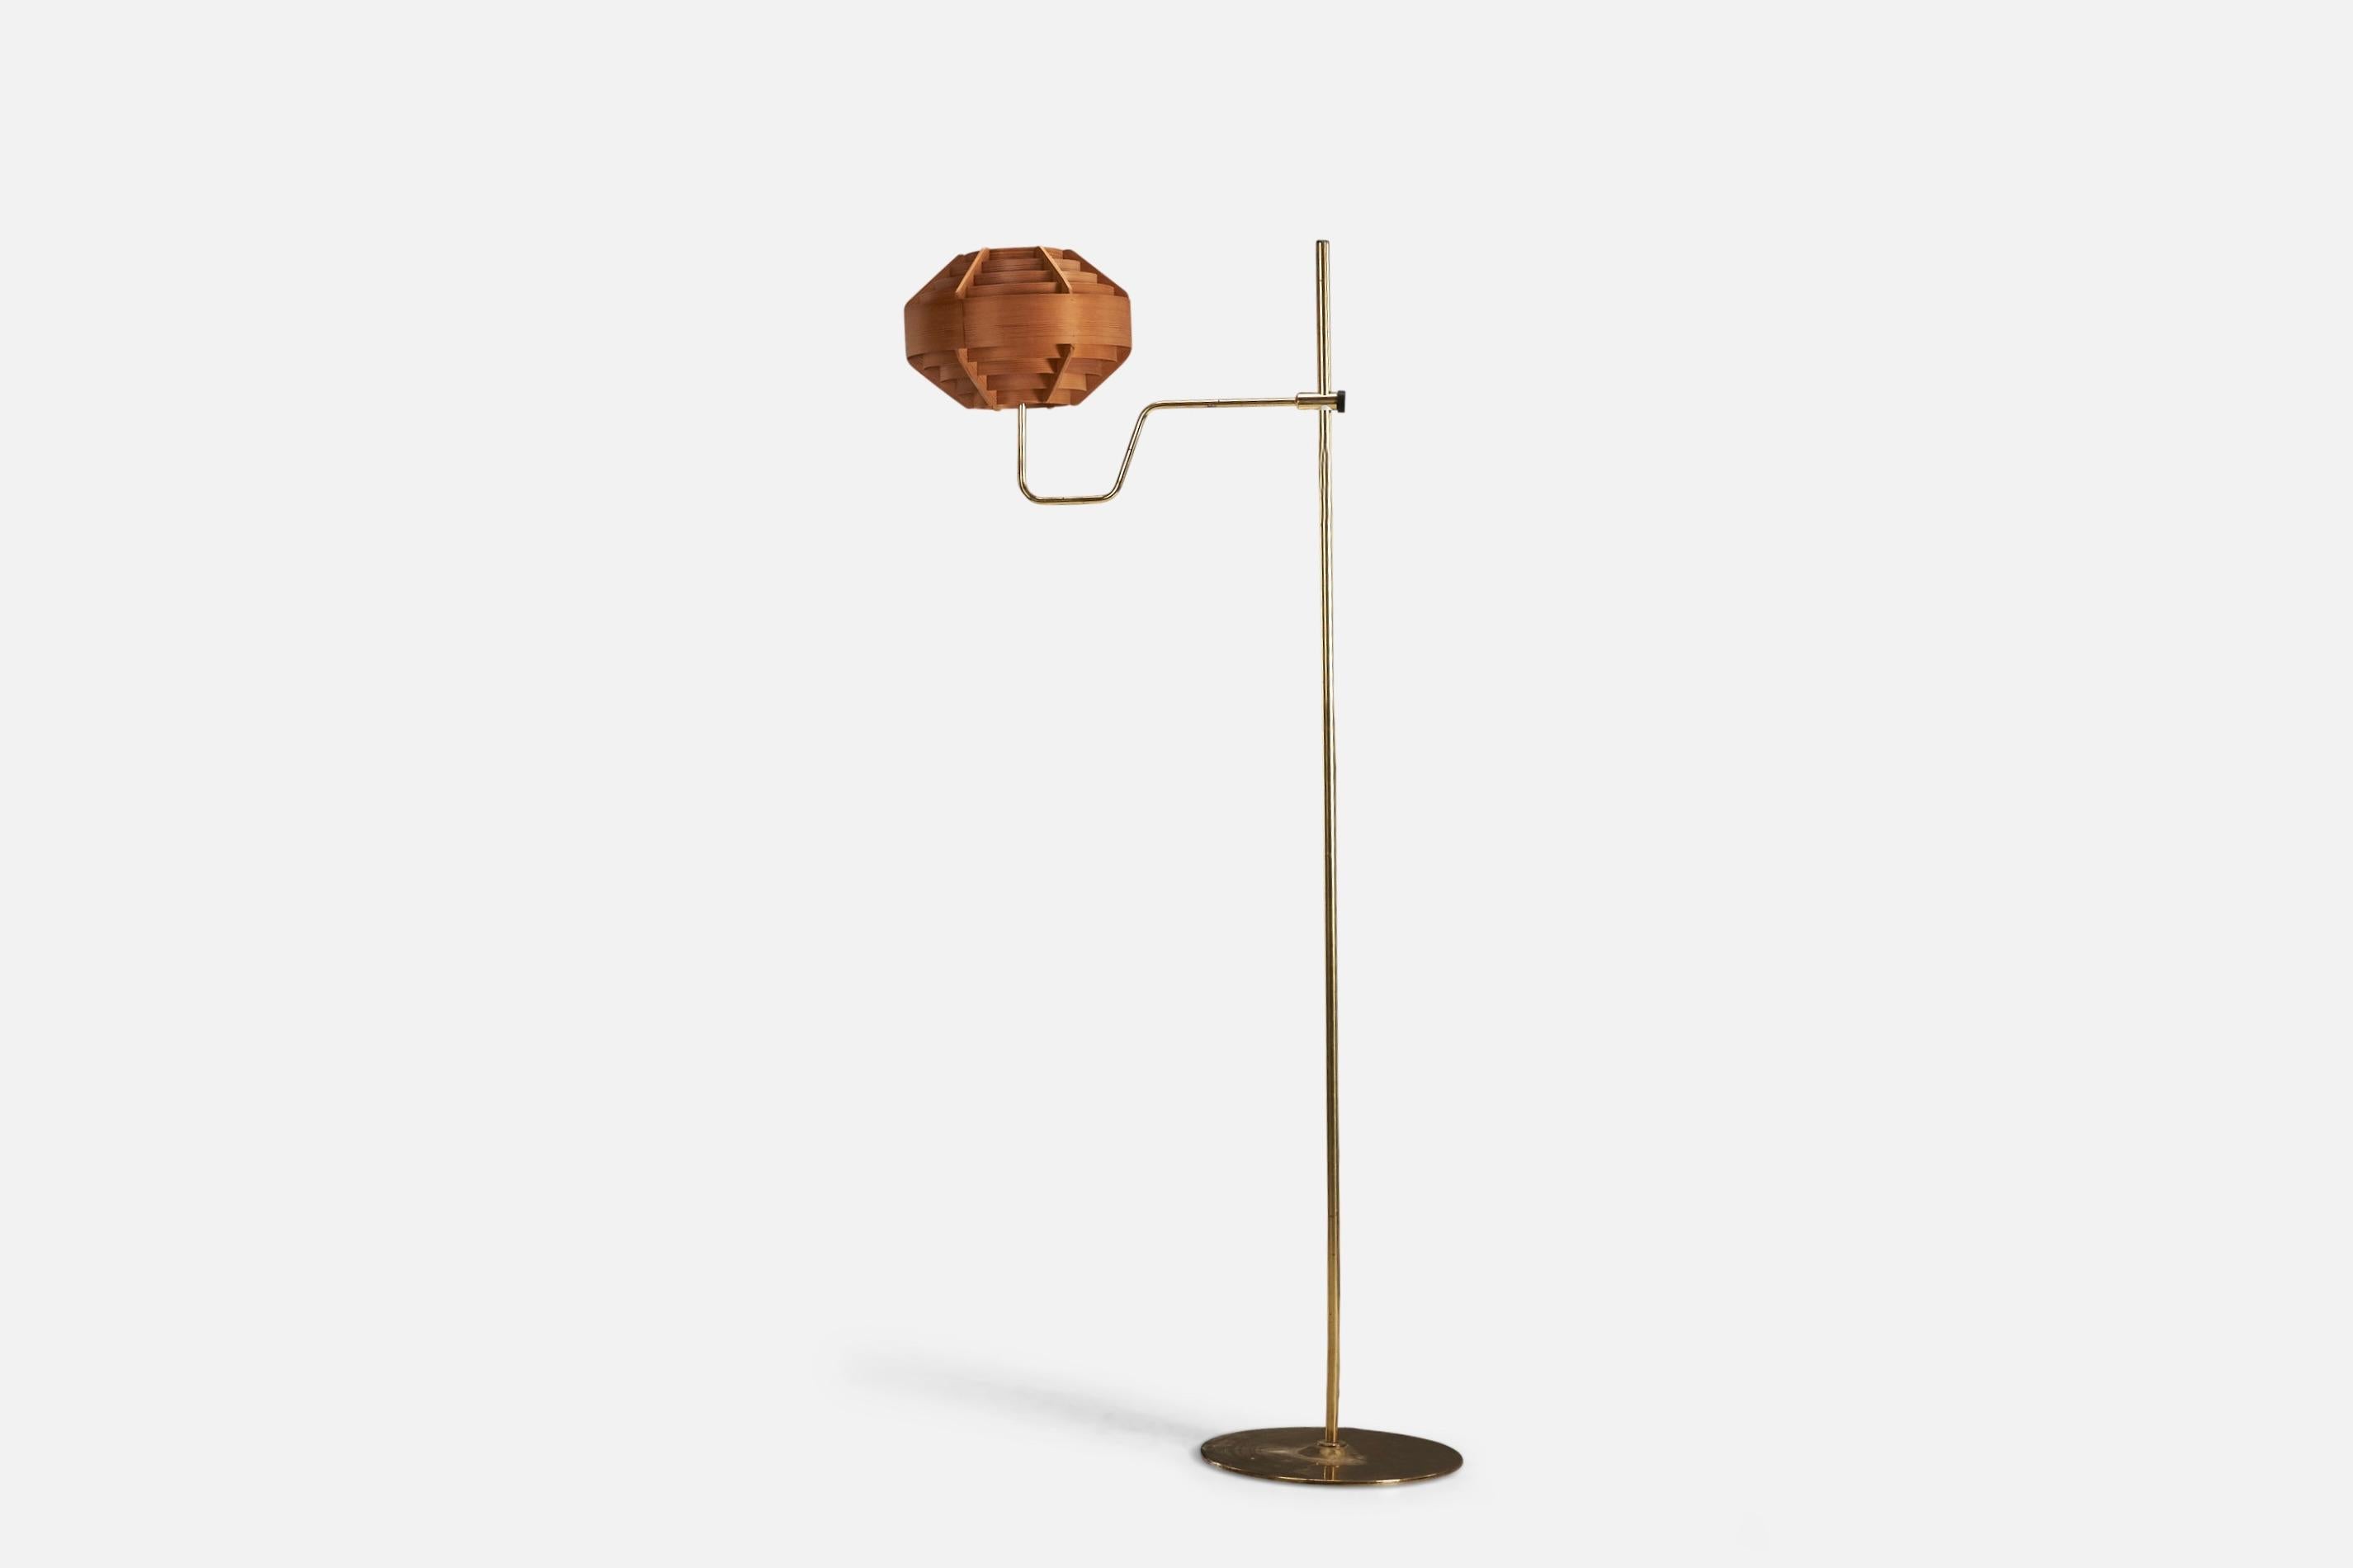 Stehlampe aus Messing und geformtem Holzfurnier, entworfen und hergestellt von Hans-Agne Jakobsson, Schweden, 1970er Jahre.

Lampenschirm zum Sockel sortiert.

Fassung für Standard-Glühbirne E-26 mit mittlerem Sockel.

Auf der Leuchte ist keine